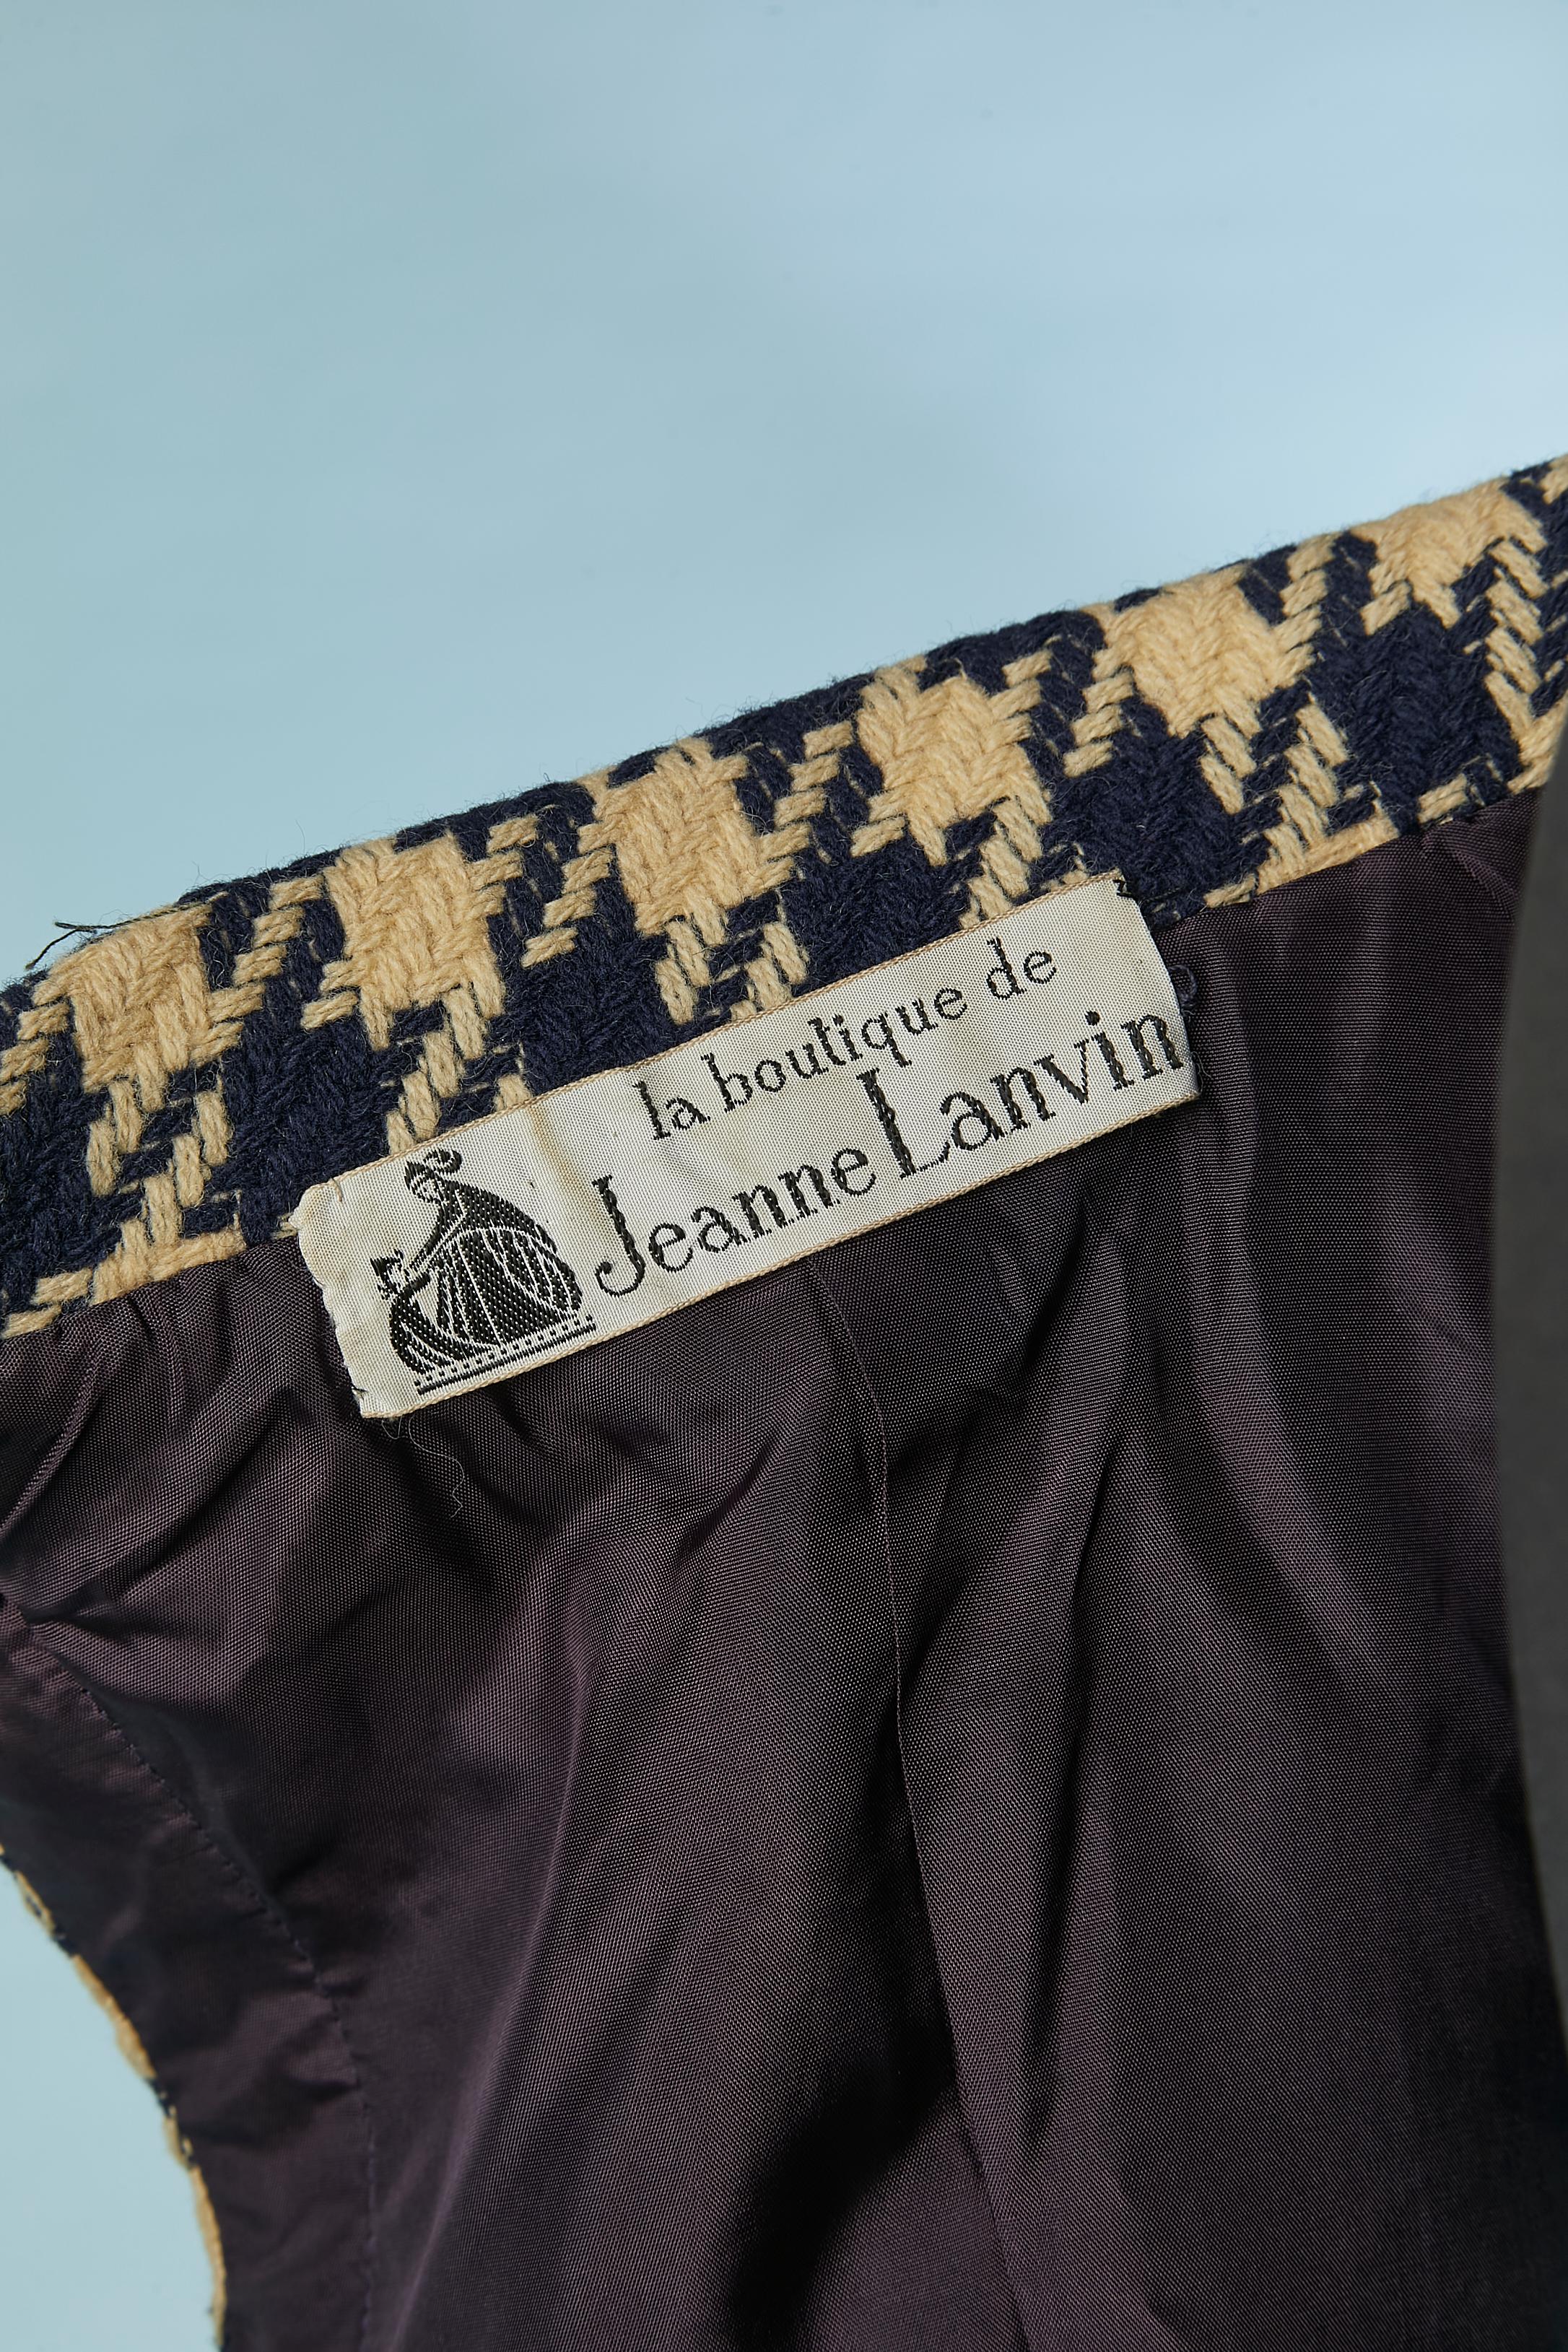 Off-white and navy blue Pied de coq skirt-suit La Boutique de Jeanne Lanvin  For Sale 4